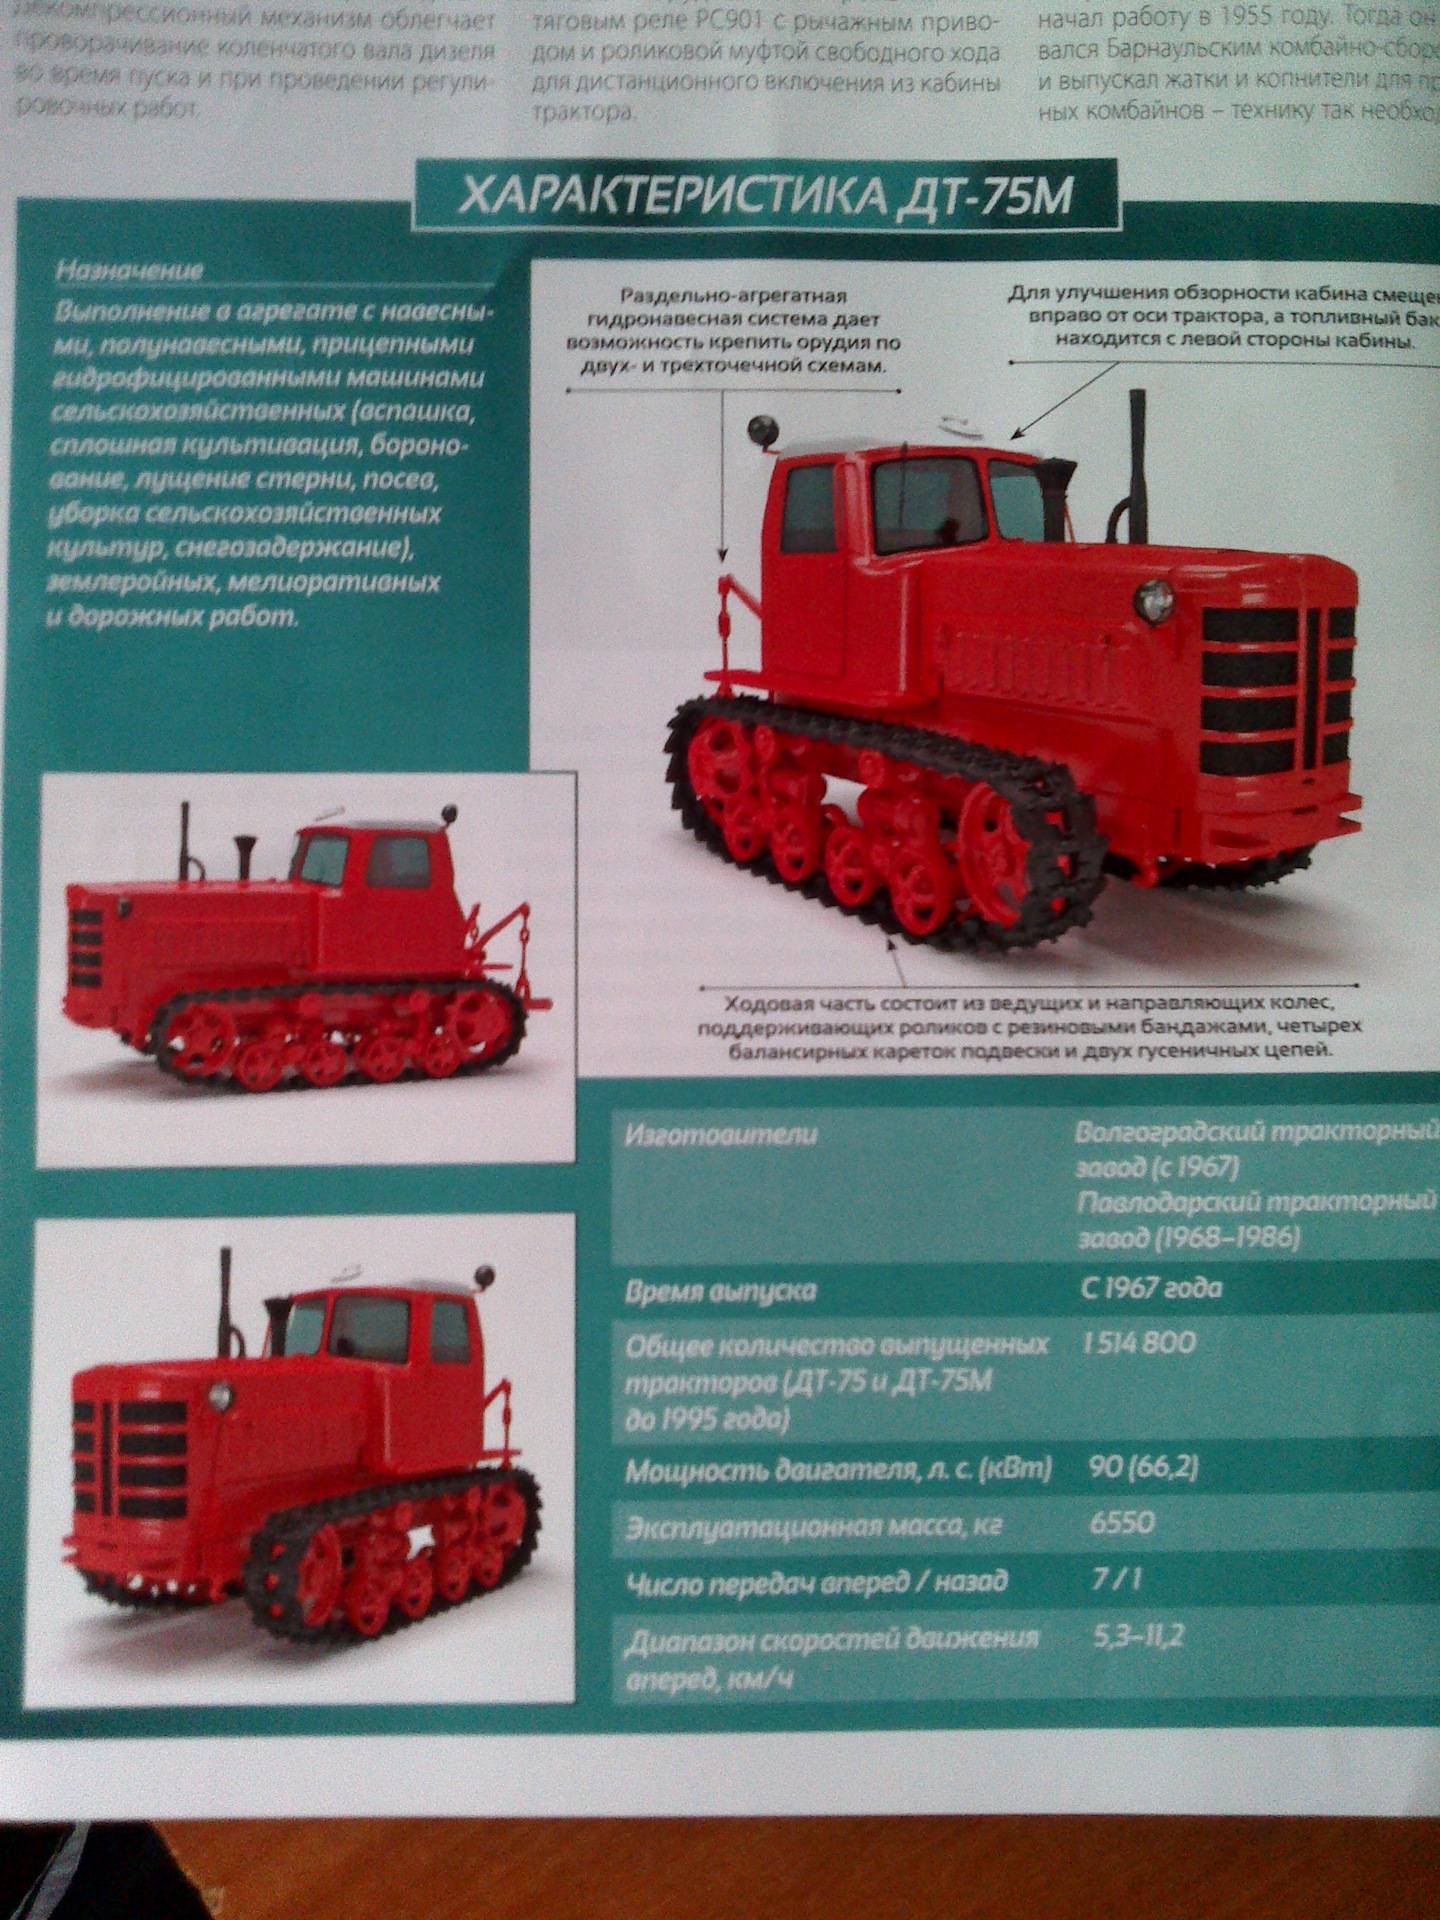 Трактор дт-75 казахстан: технические характеристики . топтехник.ру